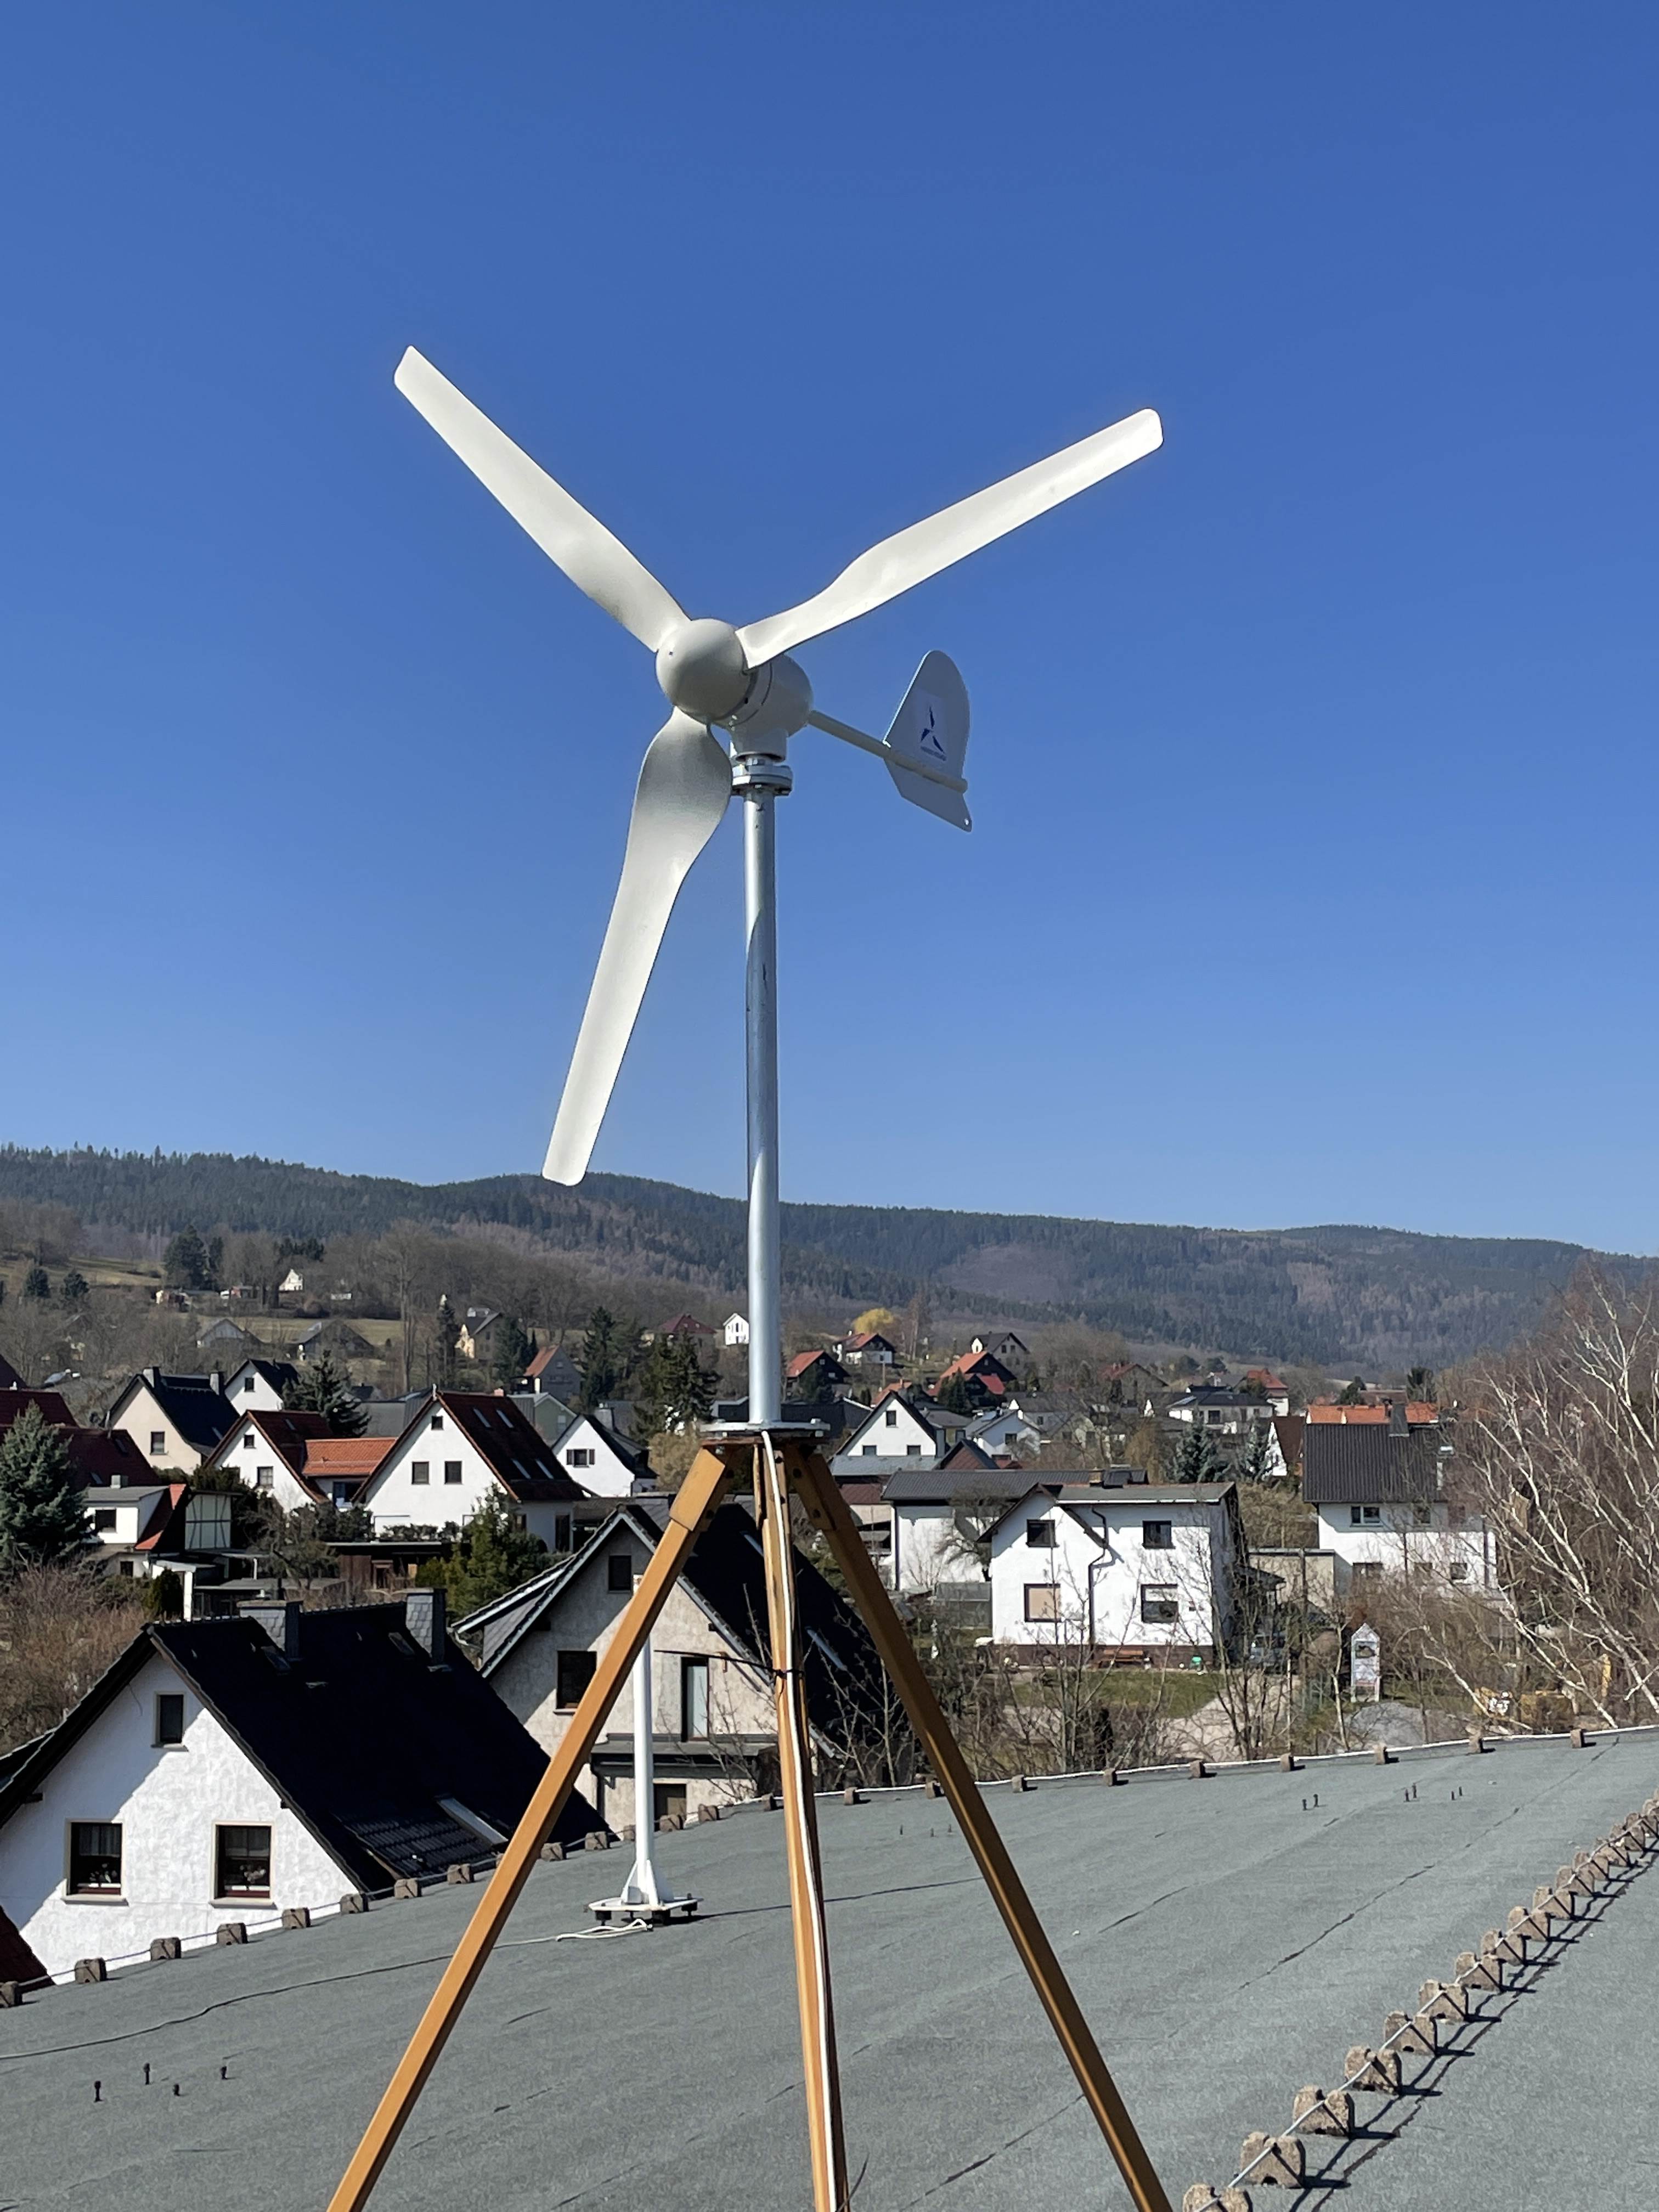 3000W Vertikale Windkraftanlage Komplett set Windturbine Windrad  Windgenerator